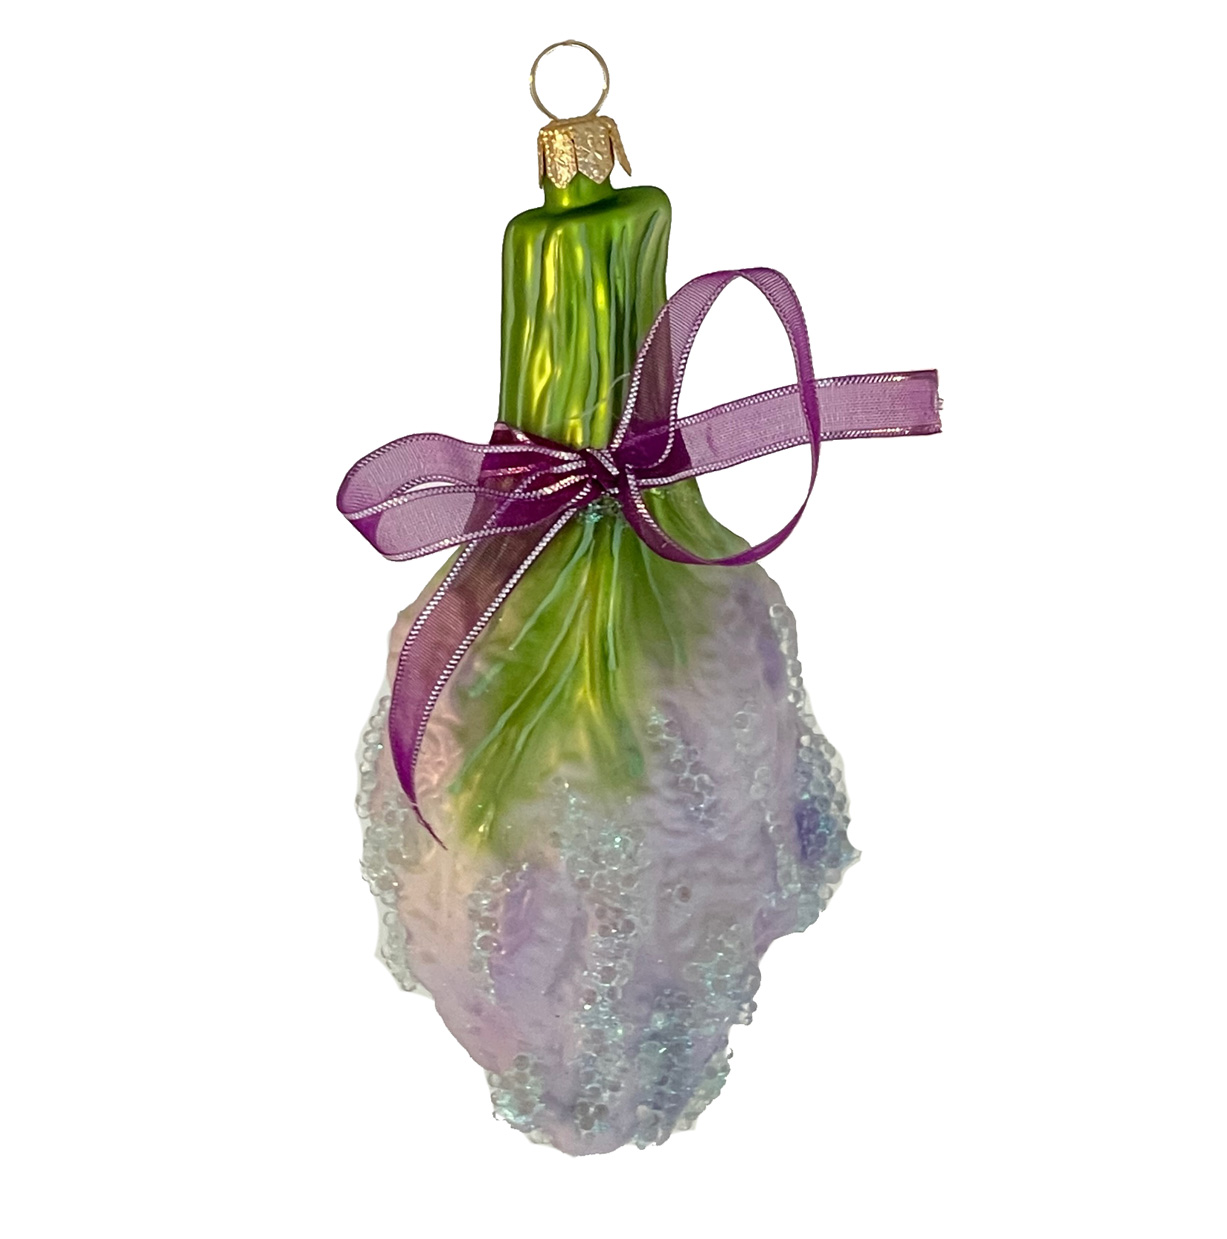 Christbaumkugel Lavendel, ca. 11,5 x 5,5 cm mit echter Schleife, Lavendelsträußchen wie in der Provence